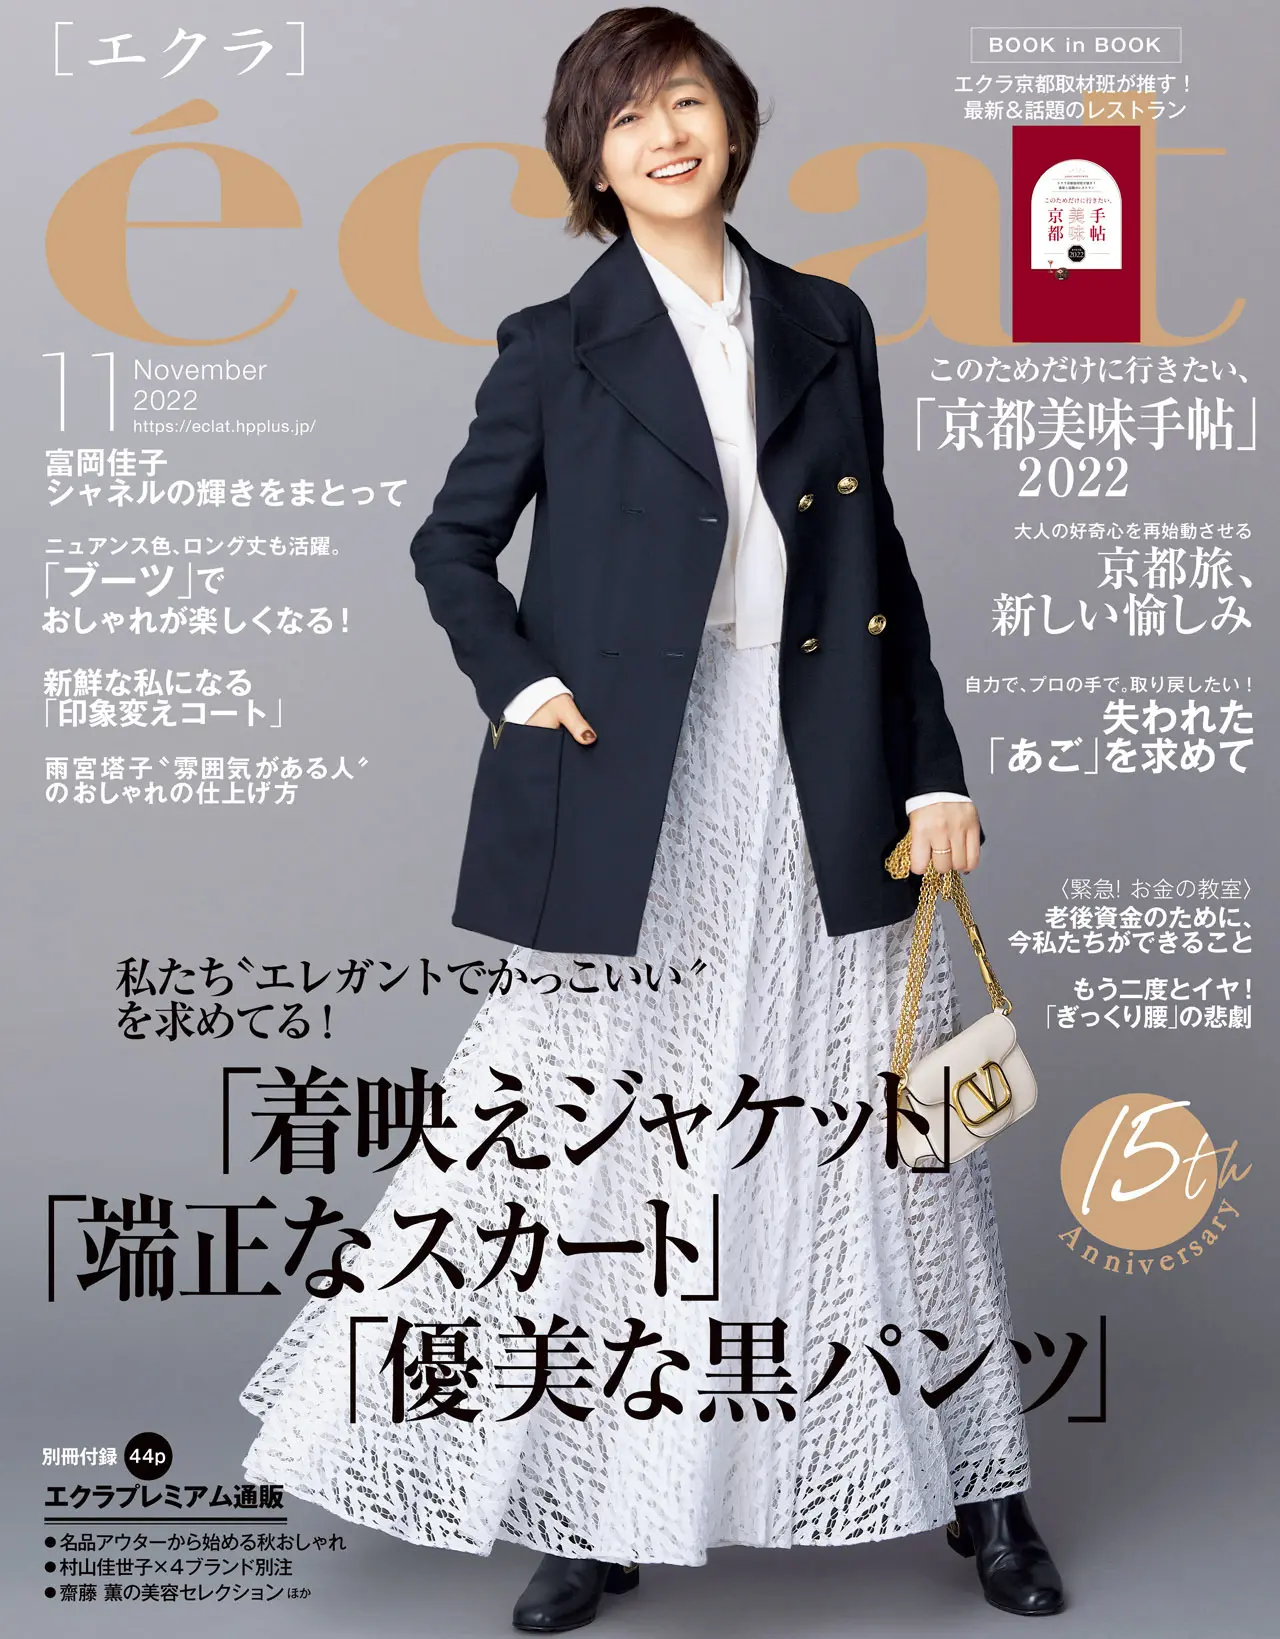 エクラ11月号表紙。カバーモデルは富岡佳子さん。